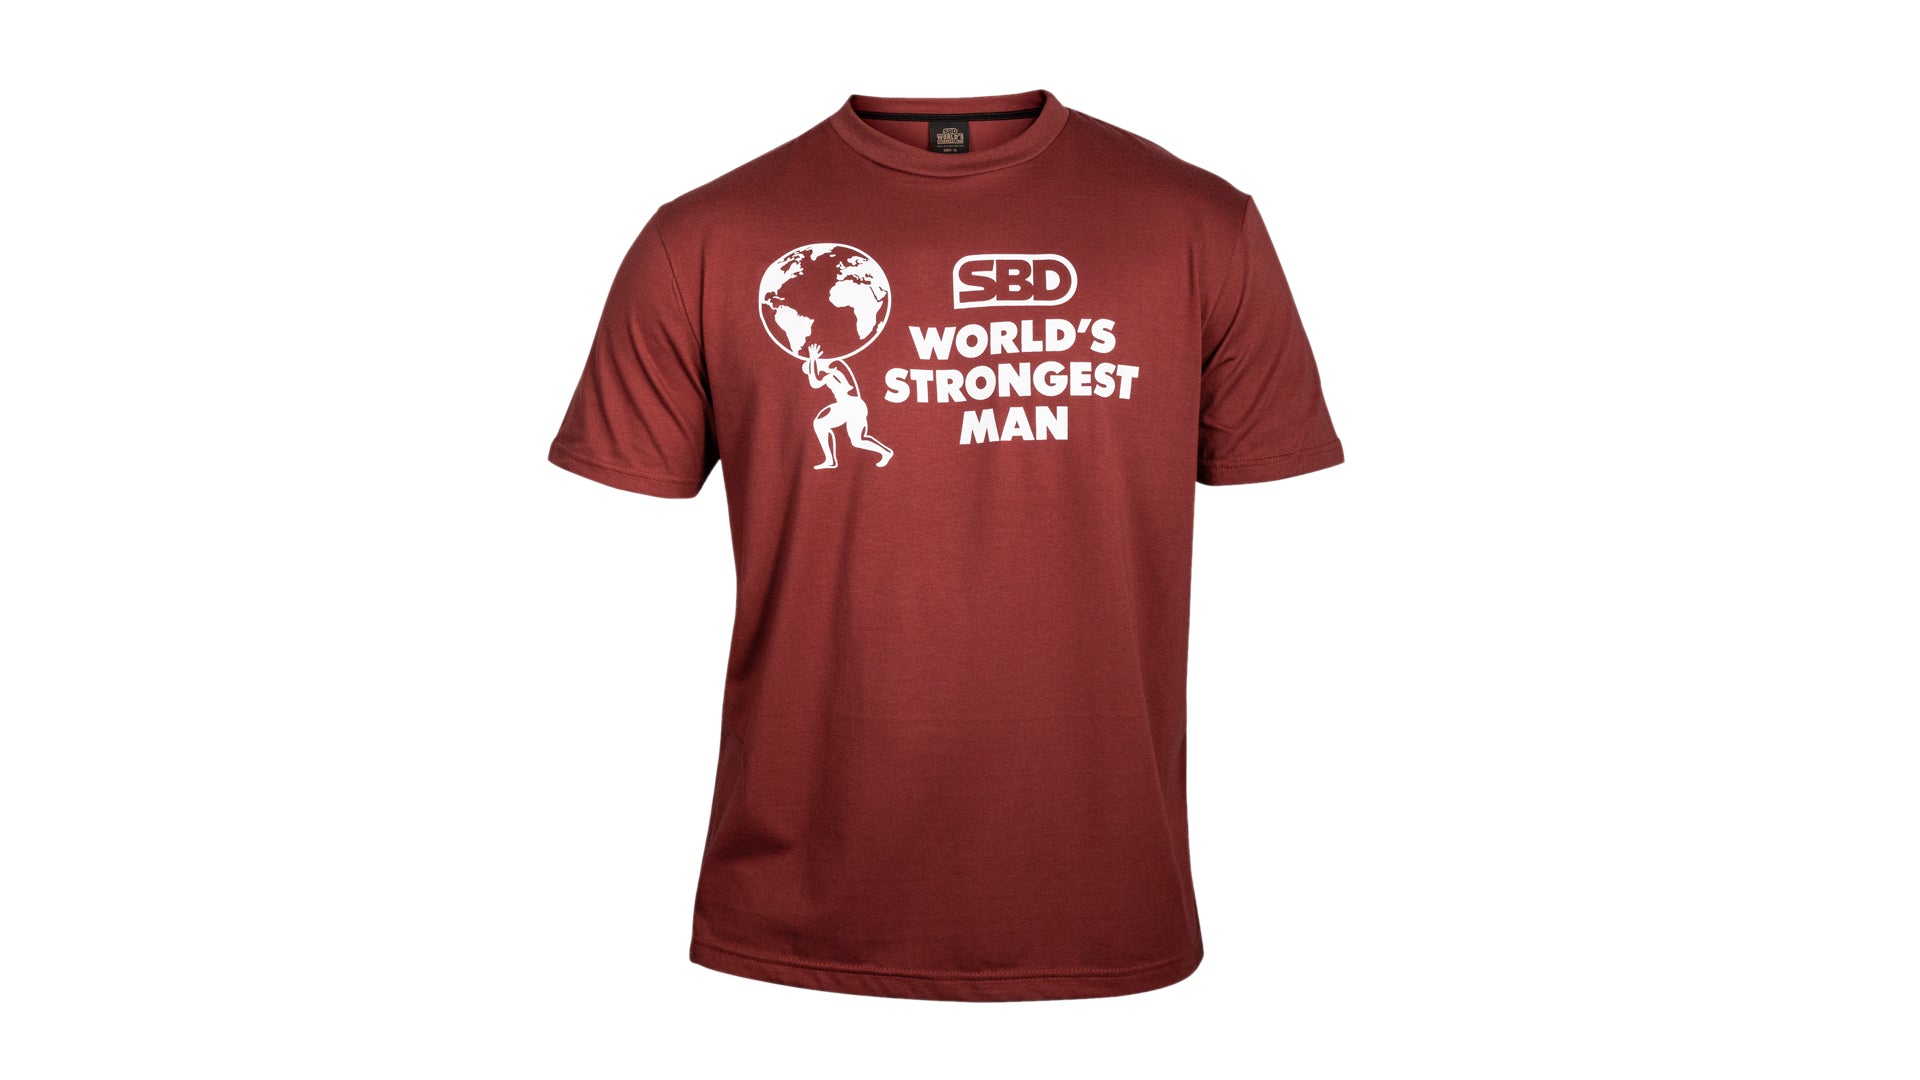 World's Strongest Man official shirt